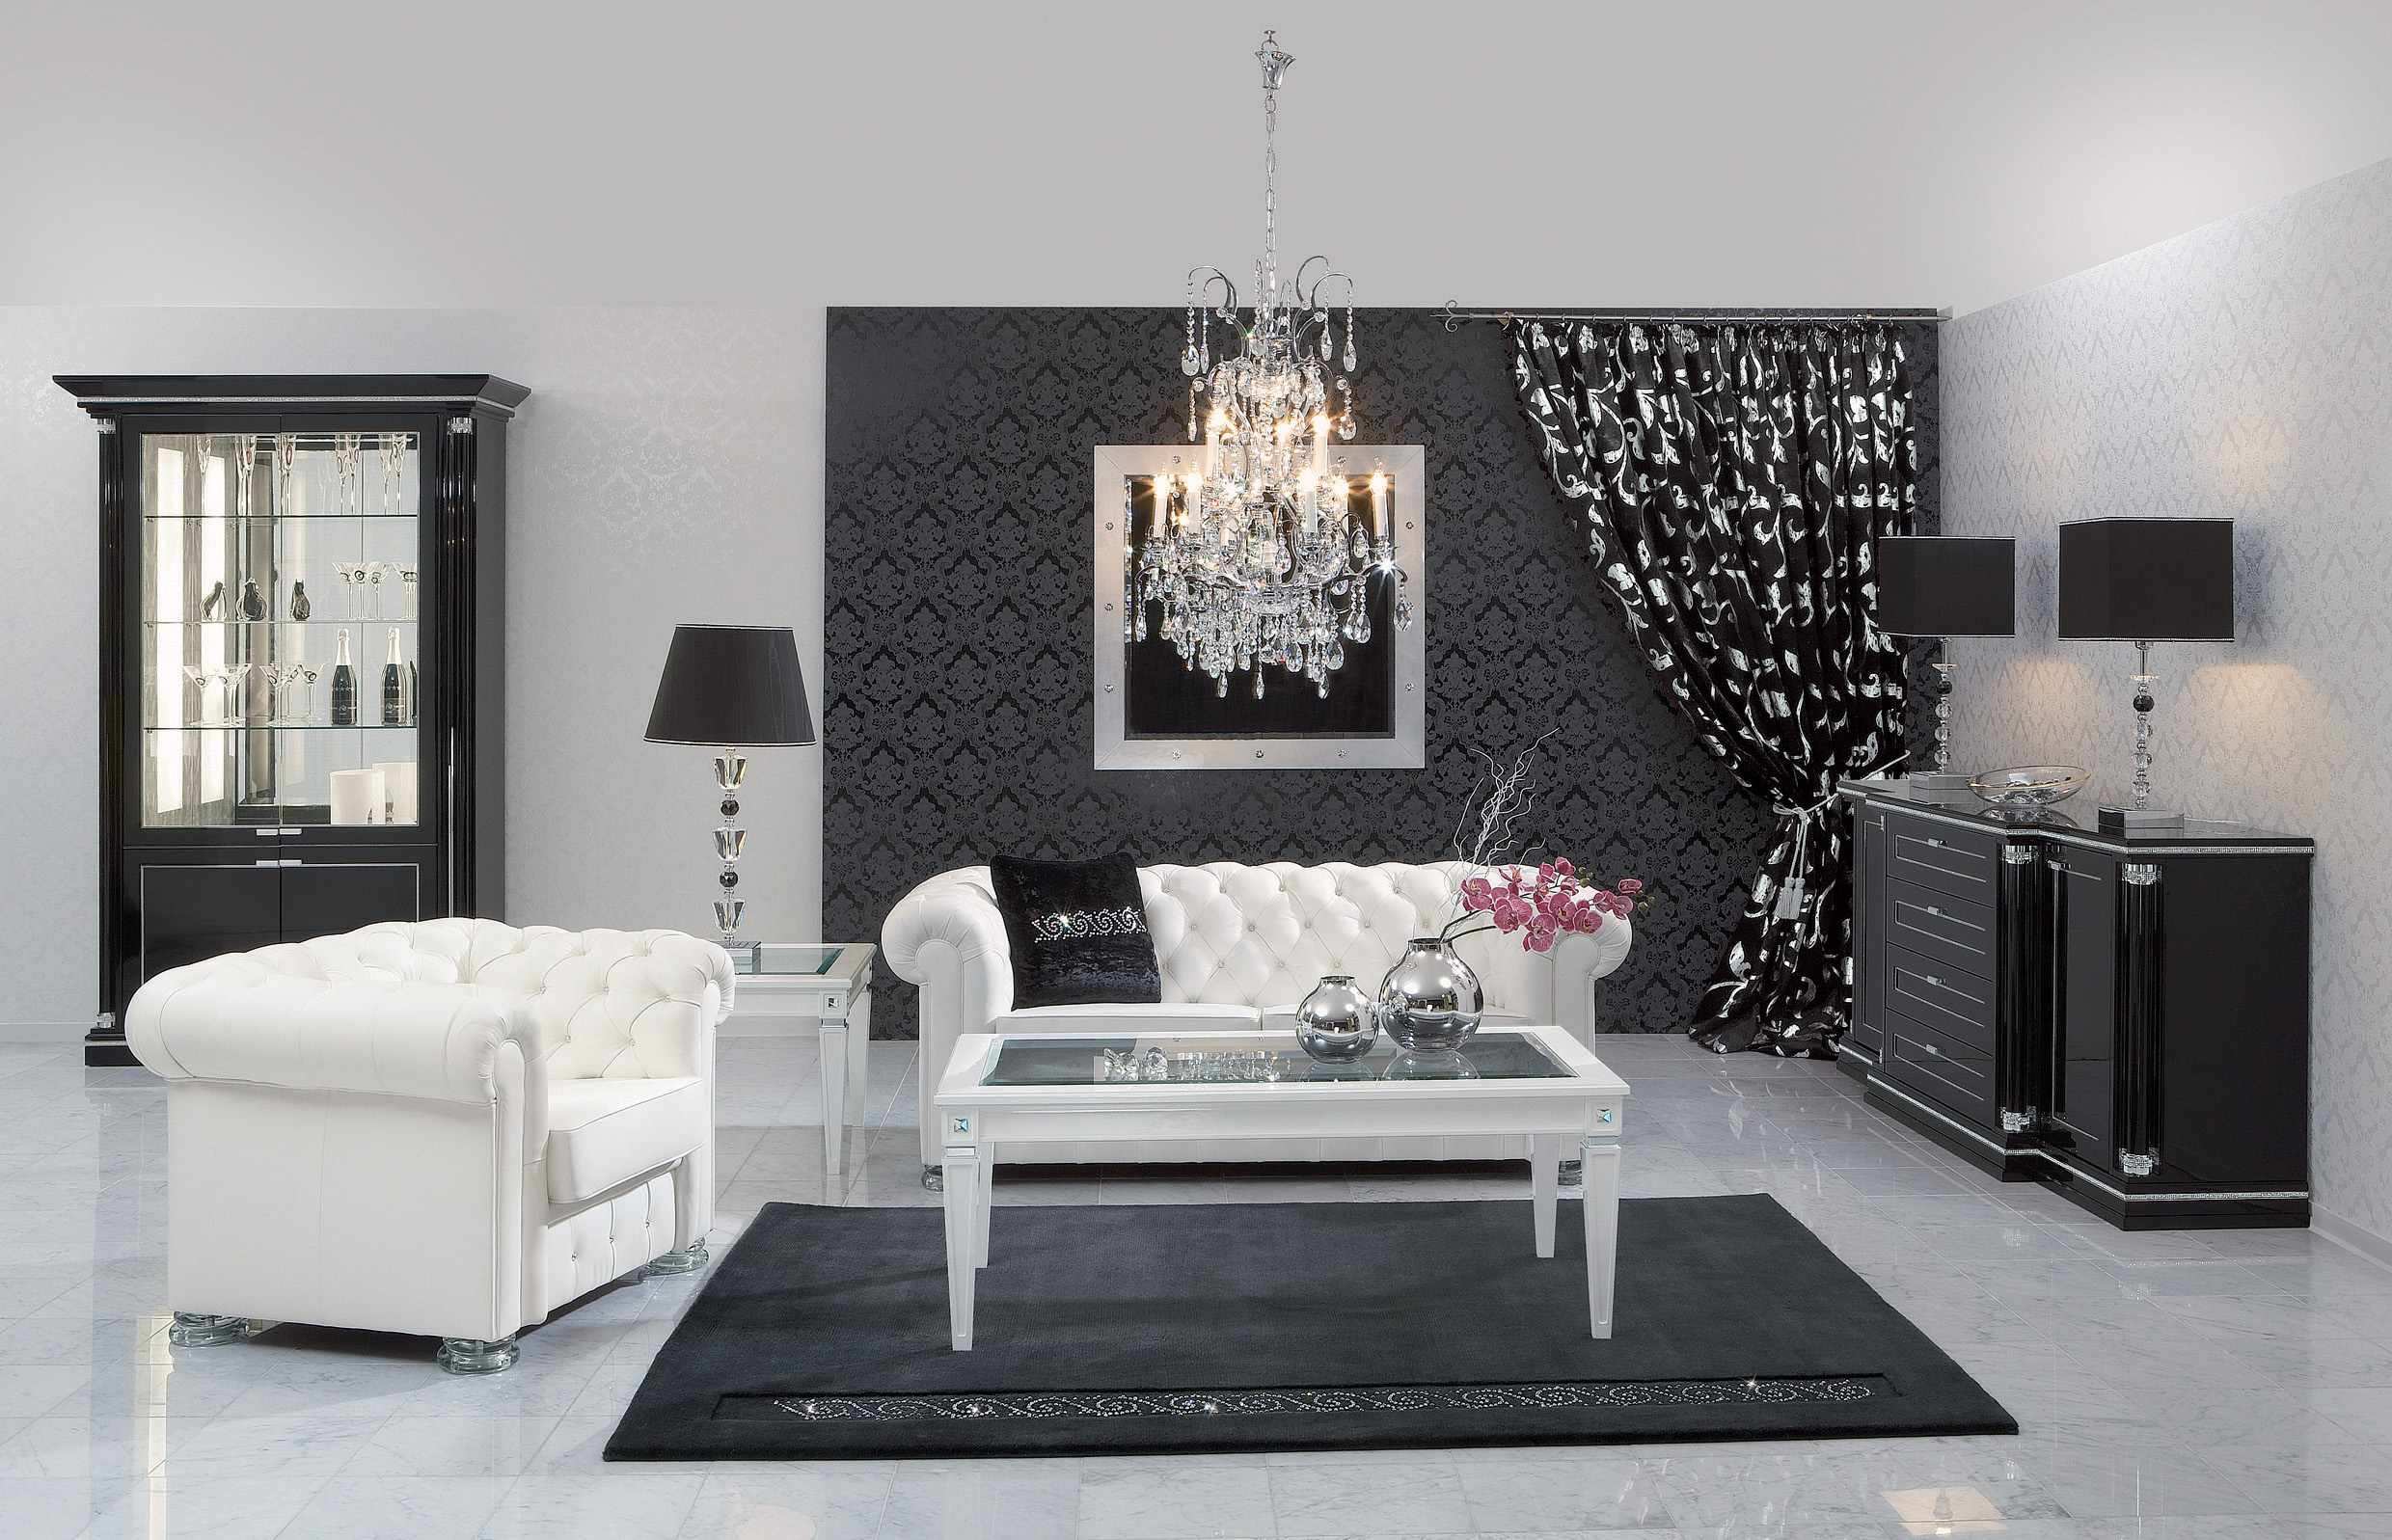 Graceful, minimalist living room